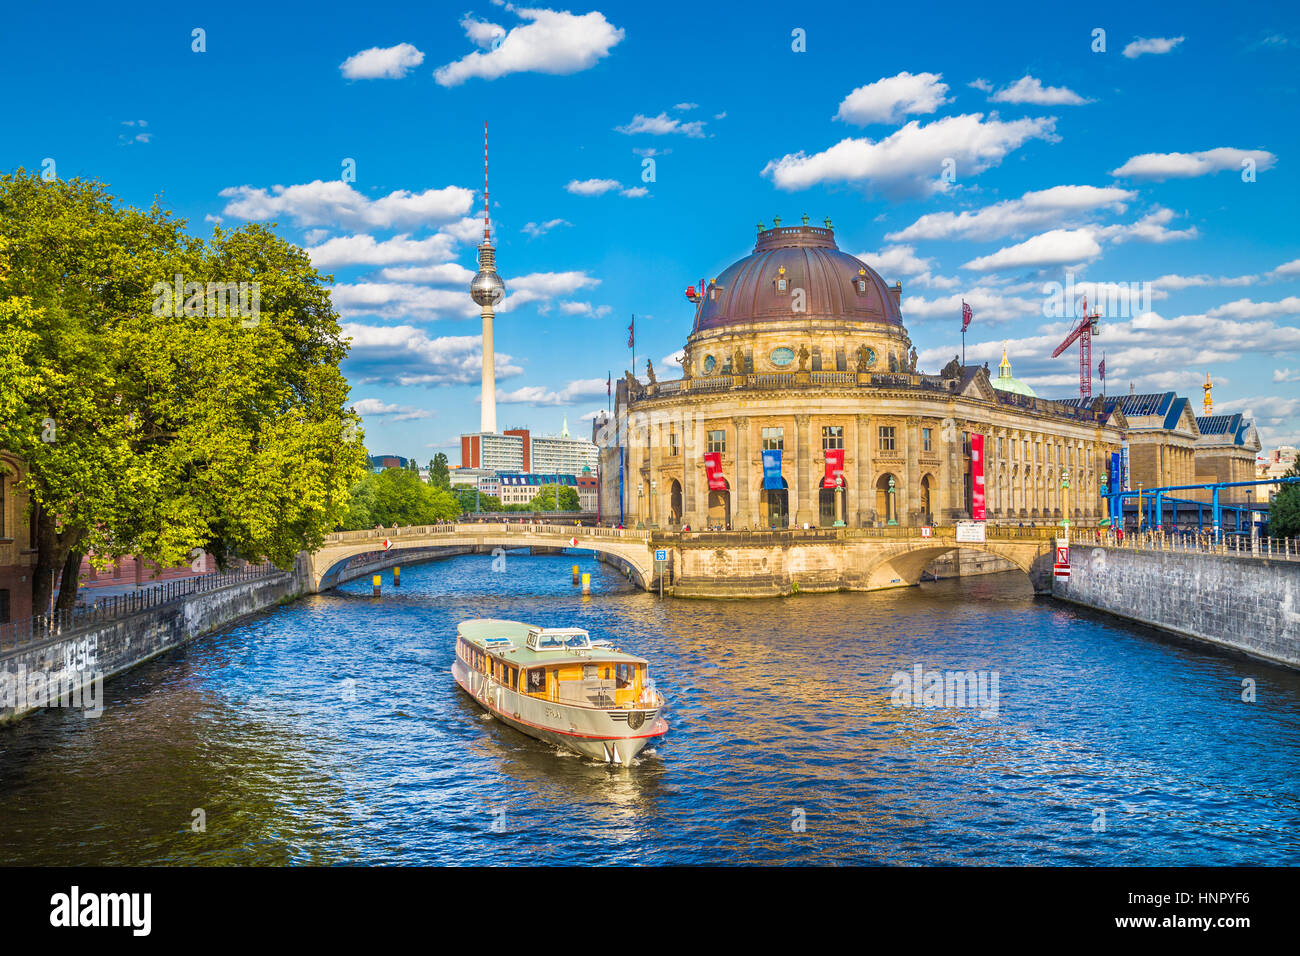 L'affichage classique de l'île aux musées de Berlin avec célèbre tour de la télévision et de bateau d'excursion sur la rivière Spree dans la belle lumière du soir au coucher du soleil d'or, Berlin Mitte Banque D'Images